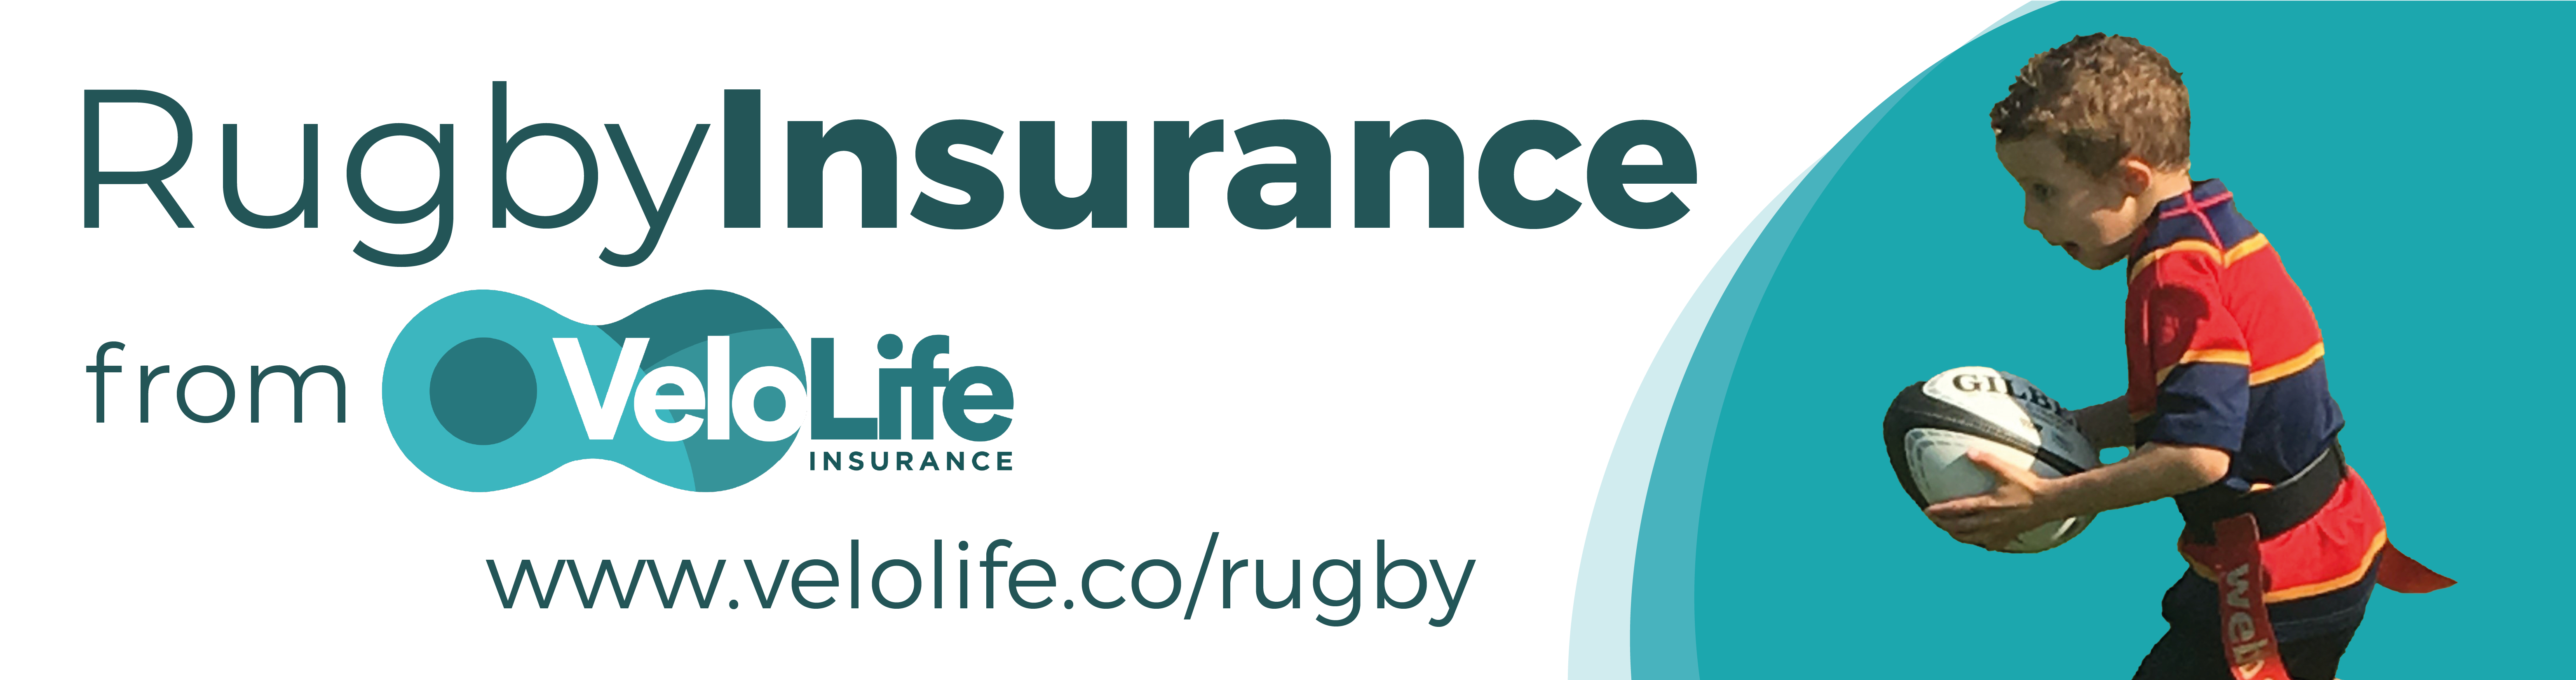 VL Rugby MetLife Web Banner_Rugby Insurance Web Banner V7 (002)